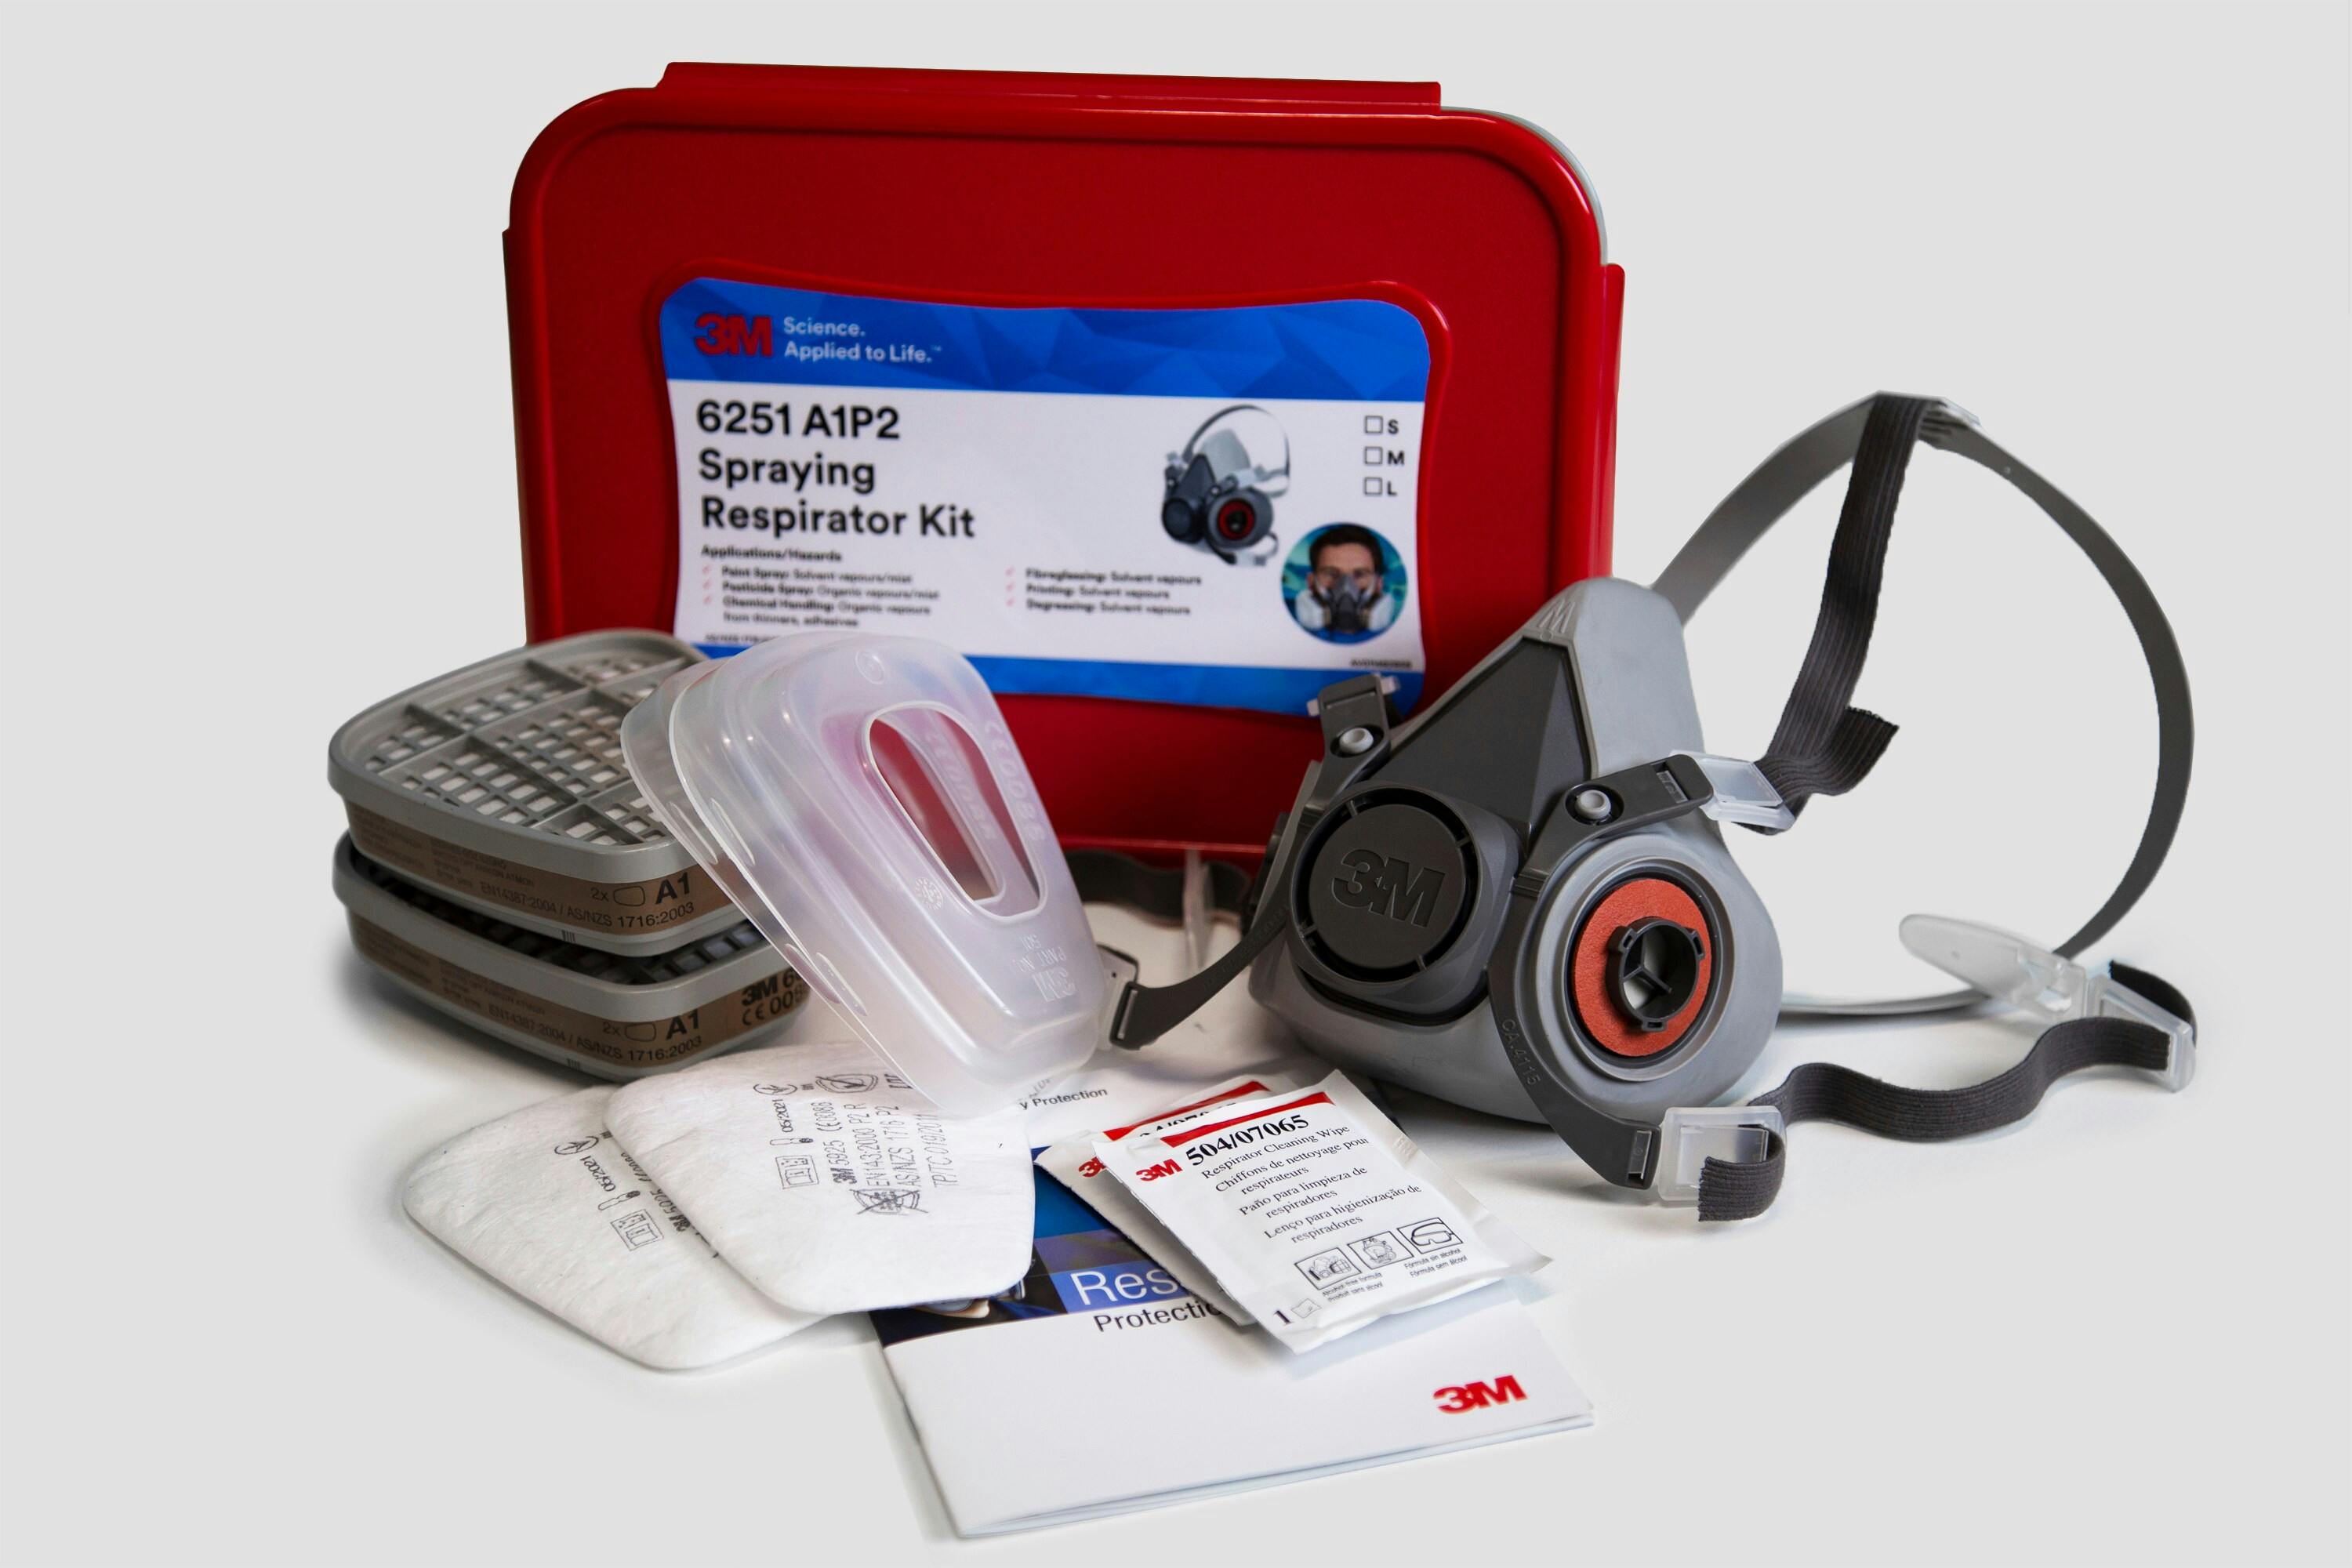 3M™ Spraying Respirator Kit 6251, A1P2, Medium